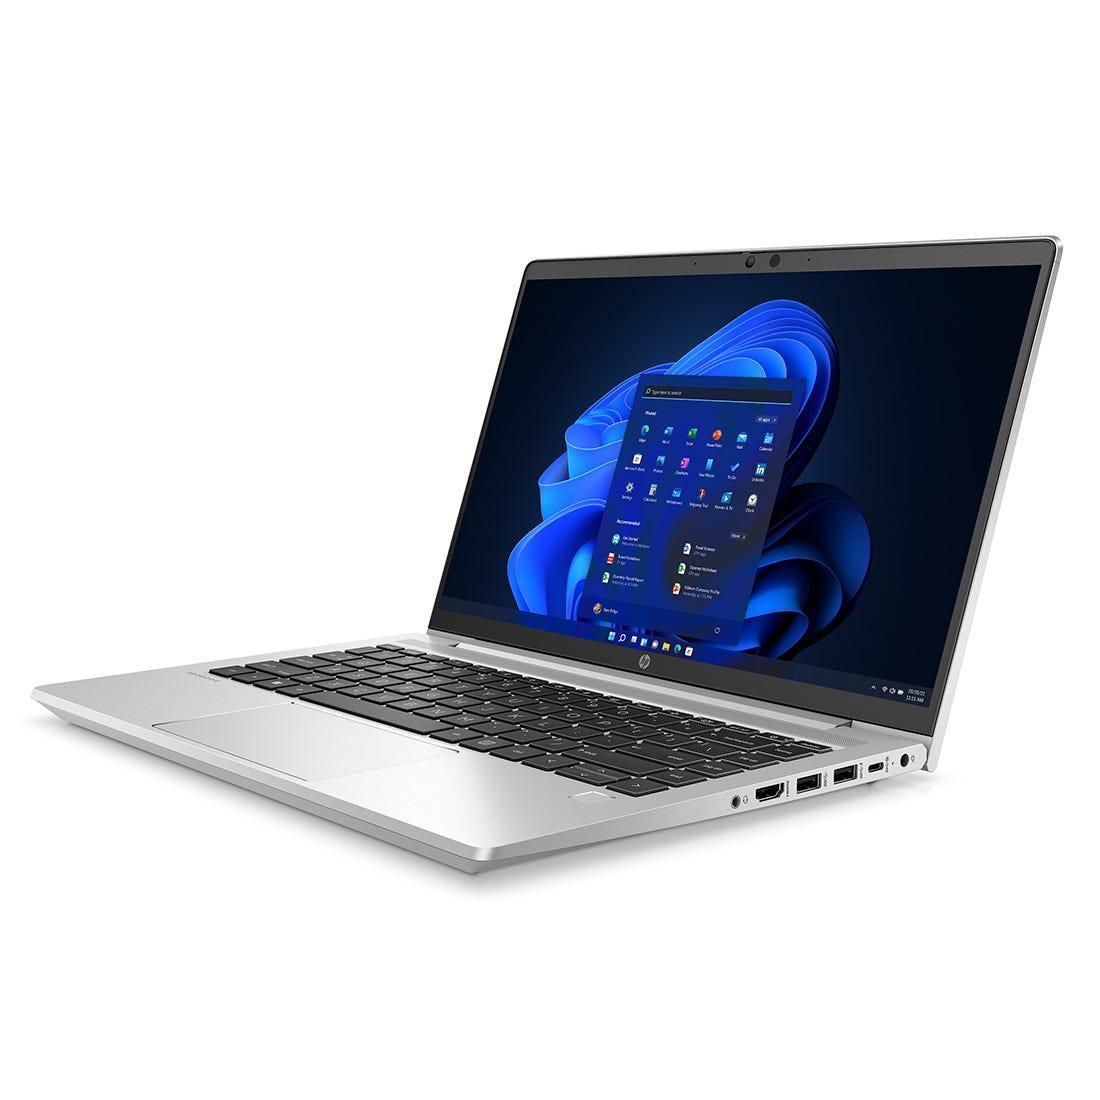 Notebook HP HPCM 445 G8 Ryzen3 8GB 256GB W10P 499S2LA#AK4 - Mega Market